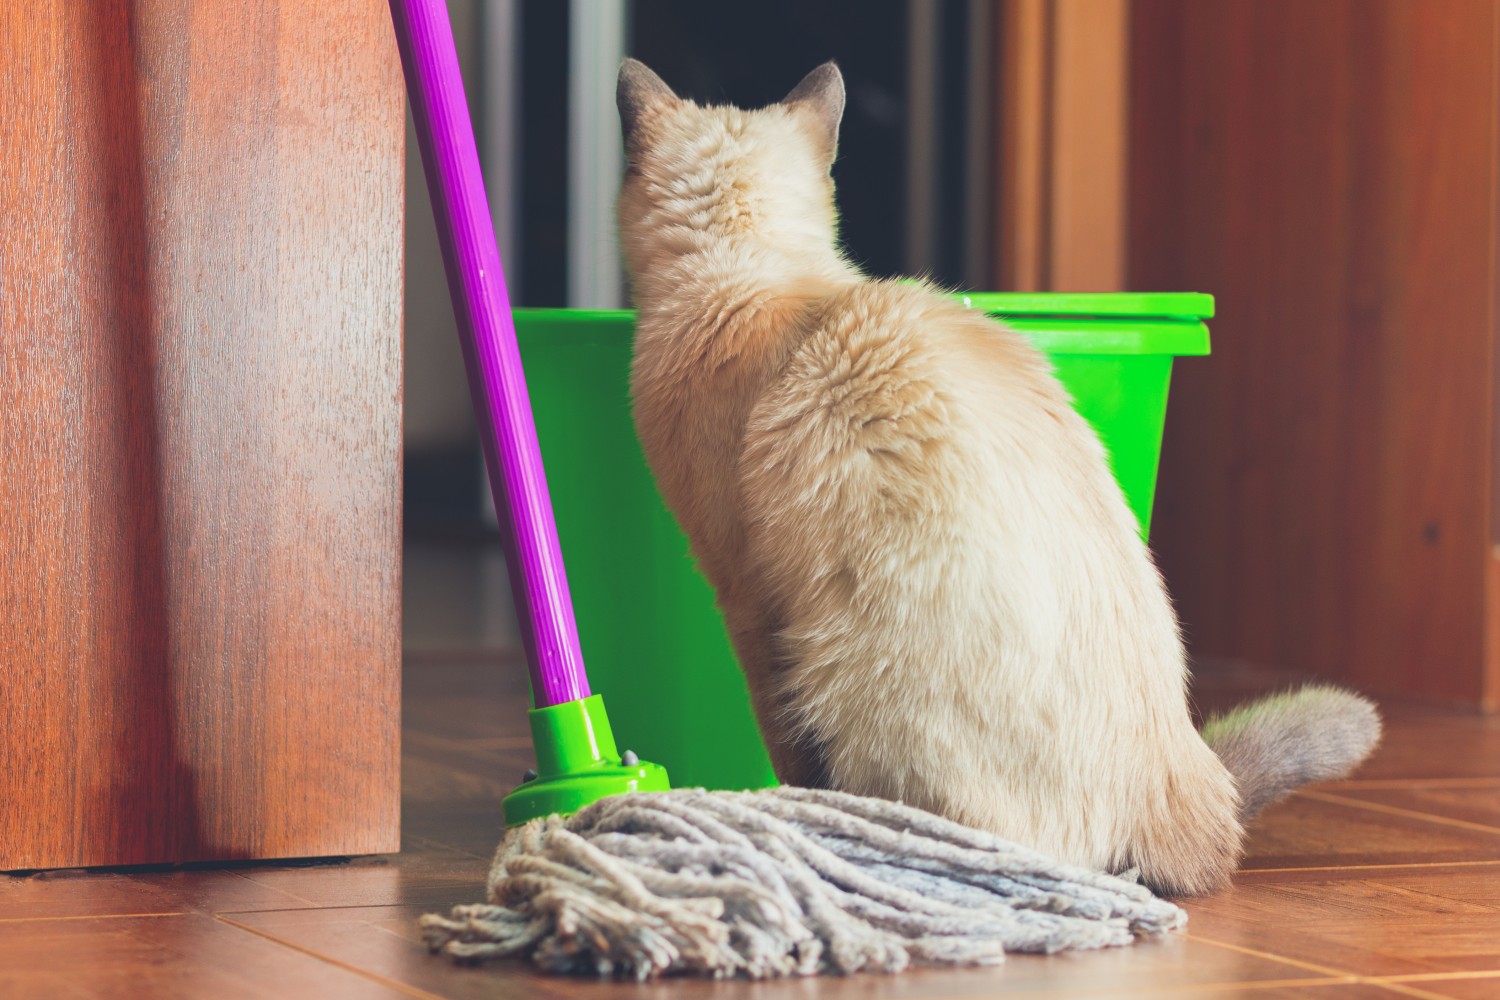 Cat Facing Away From Mop